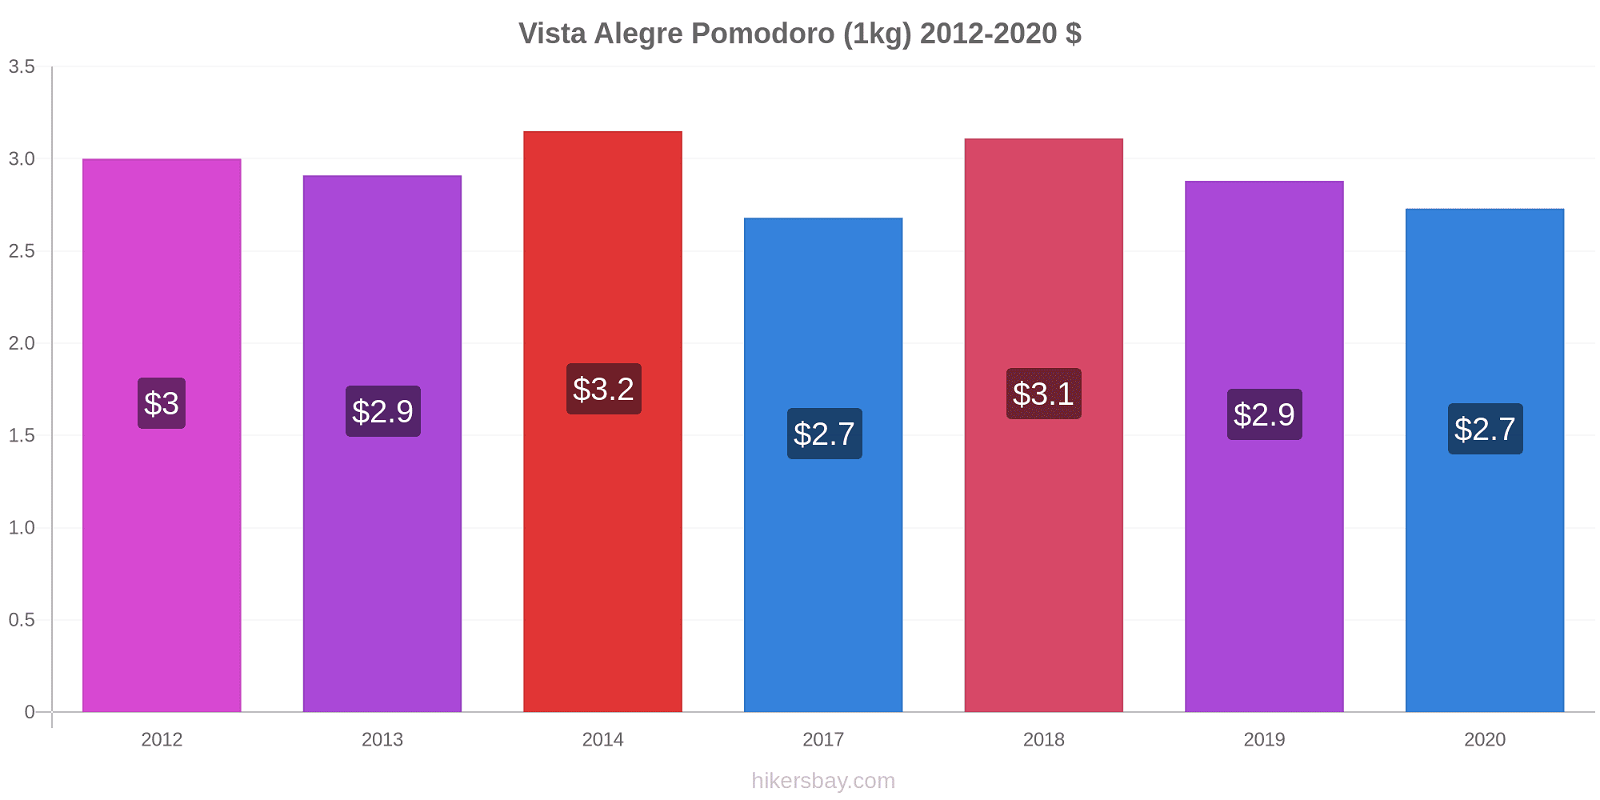 Vista Alegre variazioni di prezzo Pomodoro (1kg) hikersbay.com